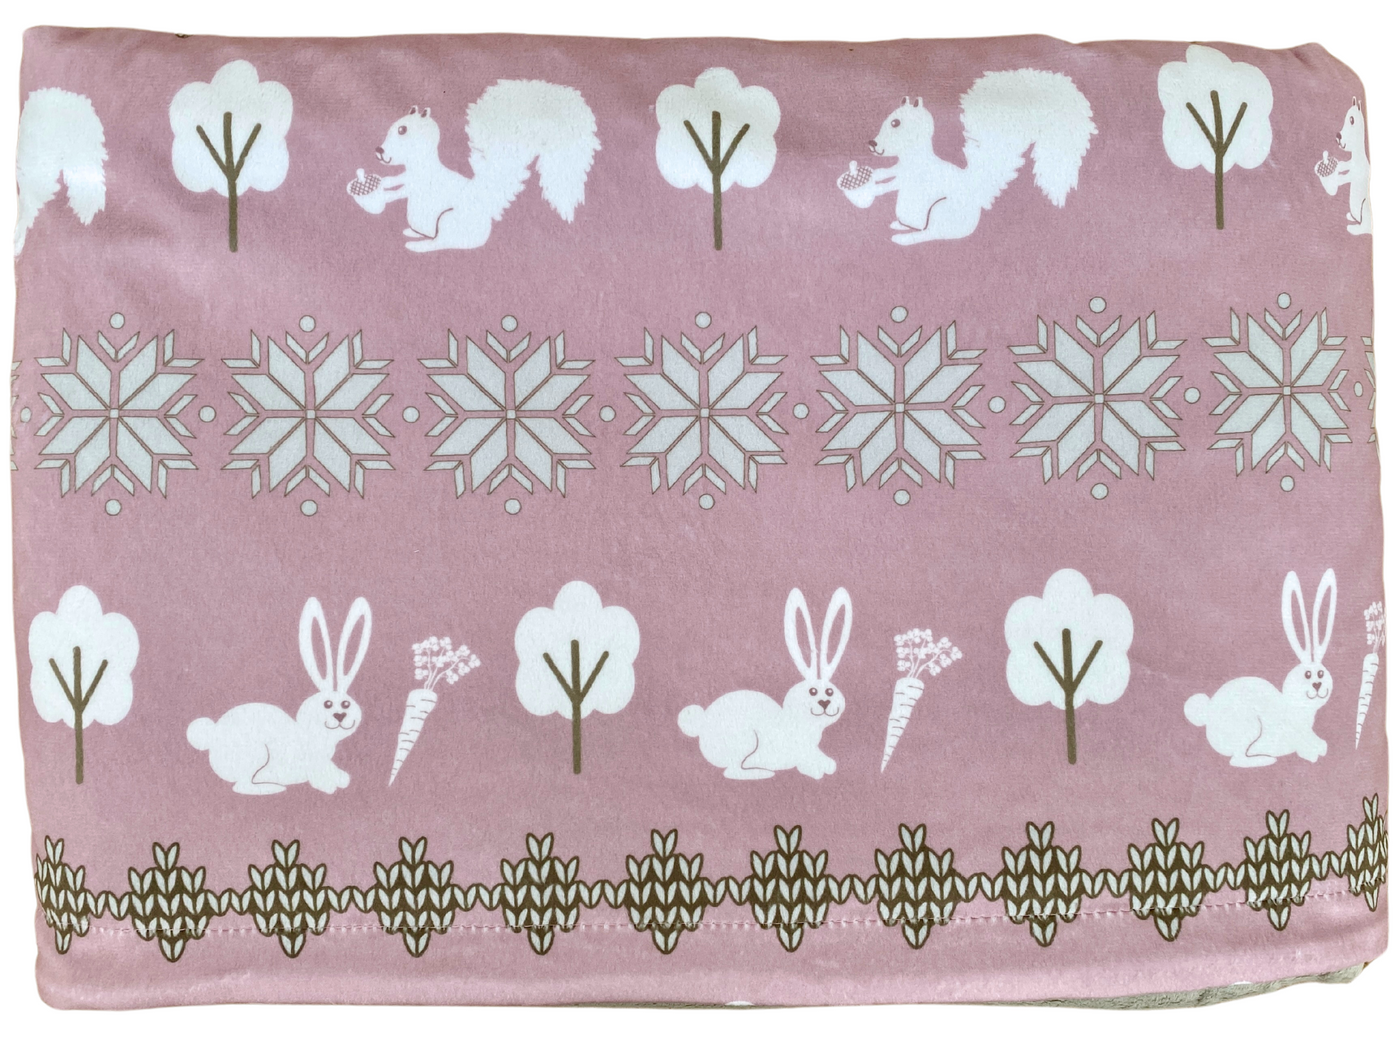 Giant Blanket: Comforting Scandinavian Pink Bunny